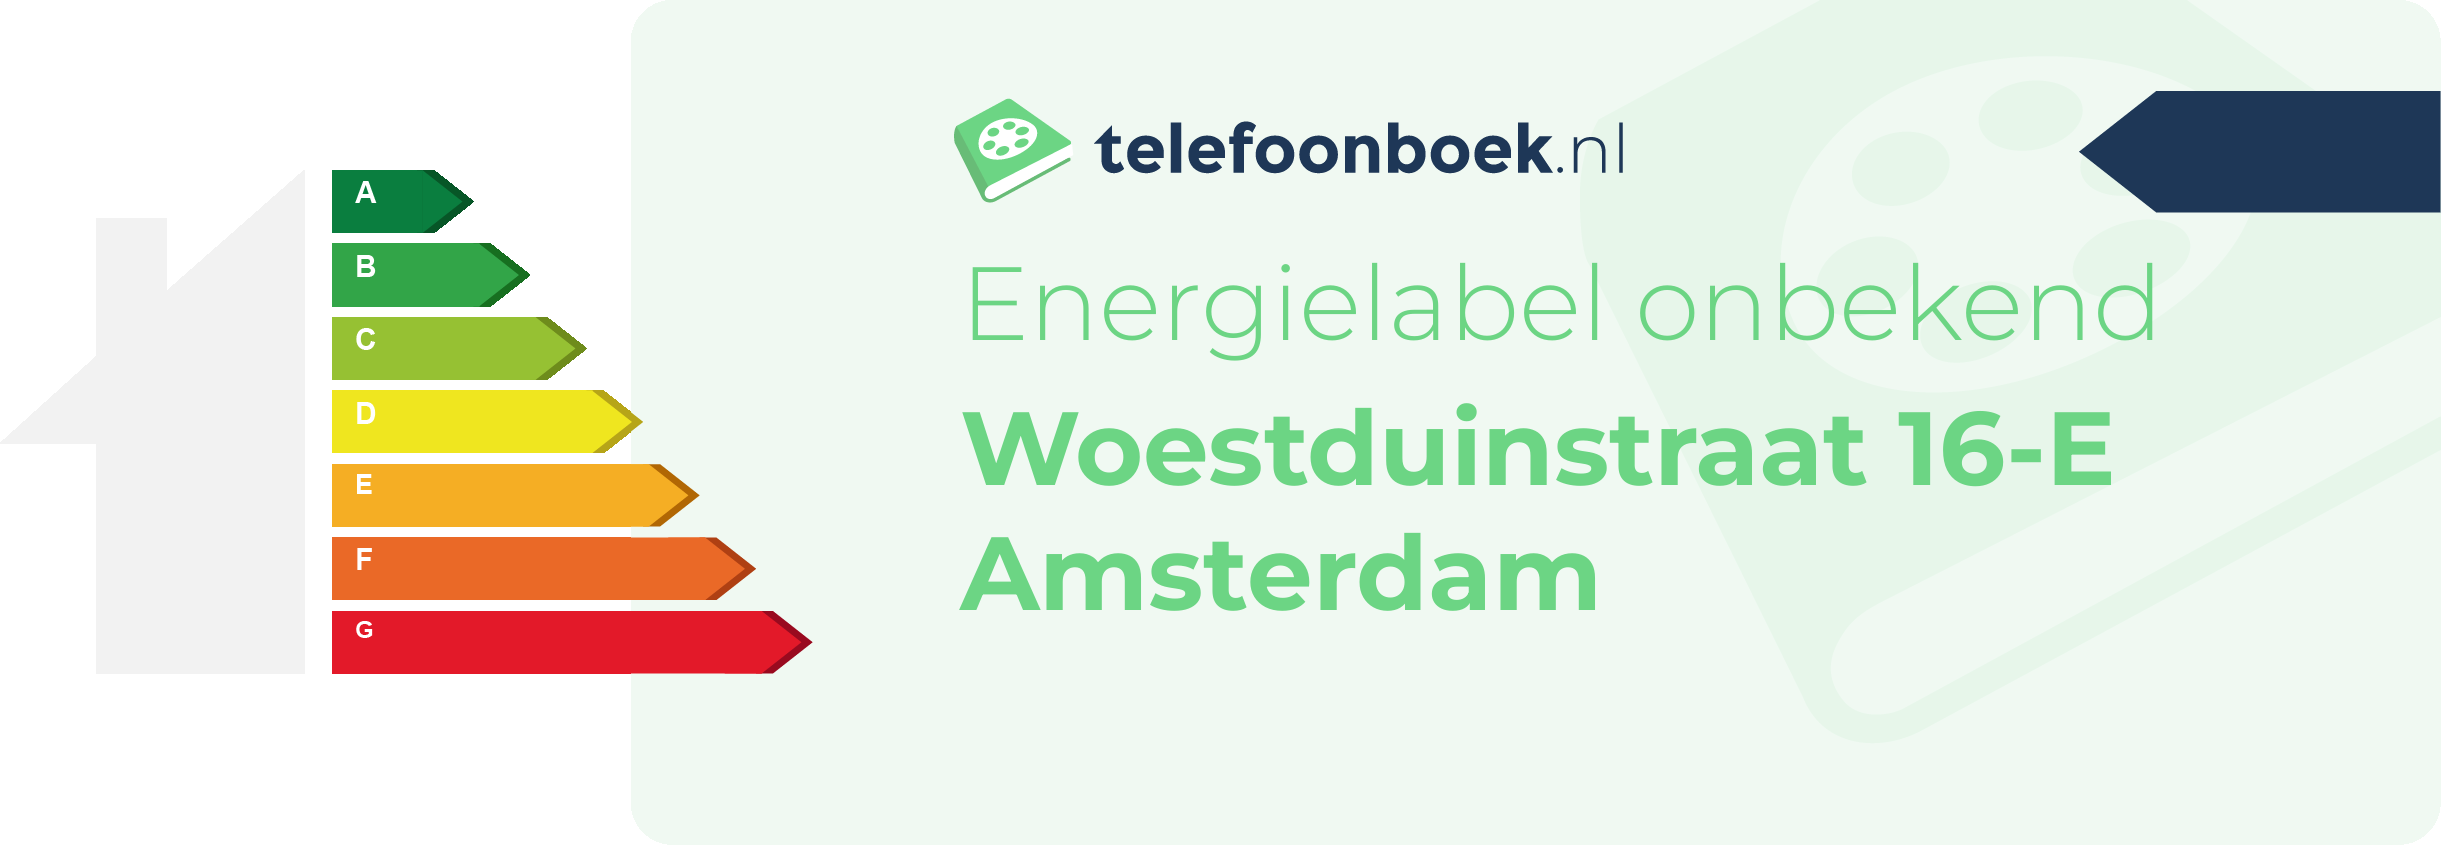 Energielabel Woestduinstraat 16-E Amsterdam